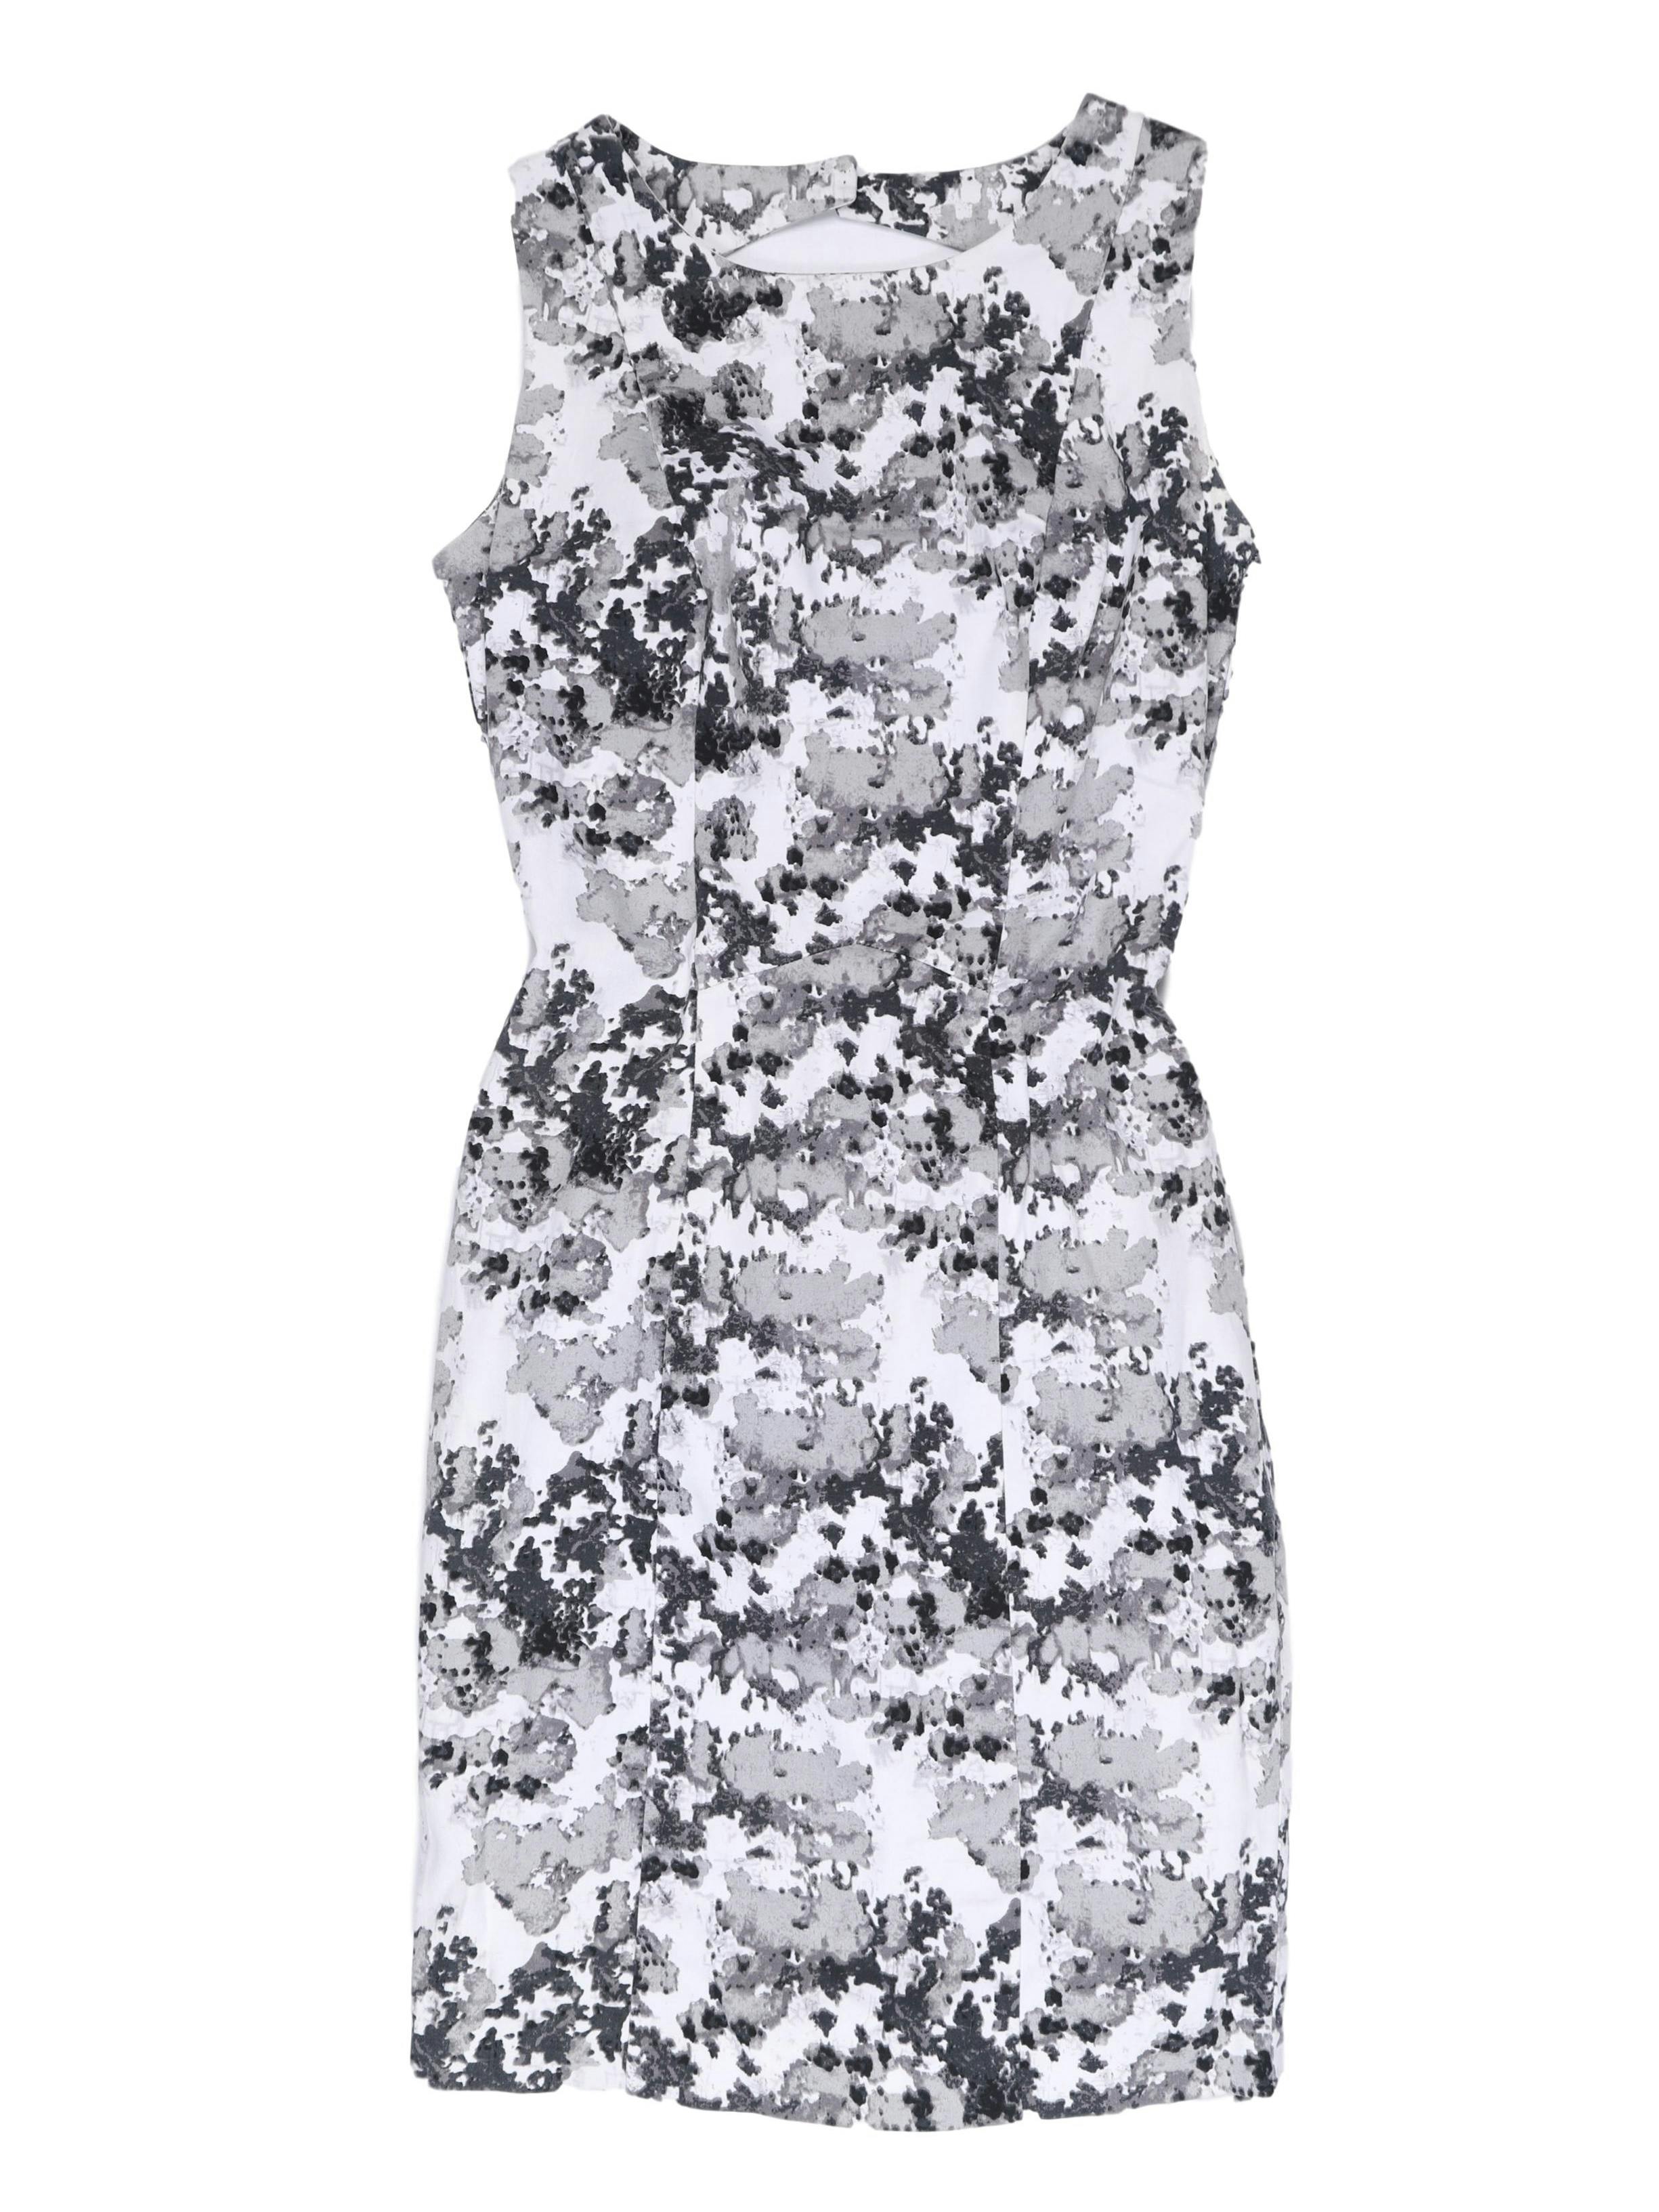 Vestido ETC Woman 97 % algodón forrado, blanco con estampado gris. Escote con botón y cierre en la espalda. Busto 84 cm, cintura 66 cm, largo 82 cm.